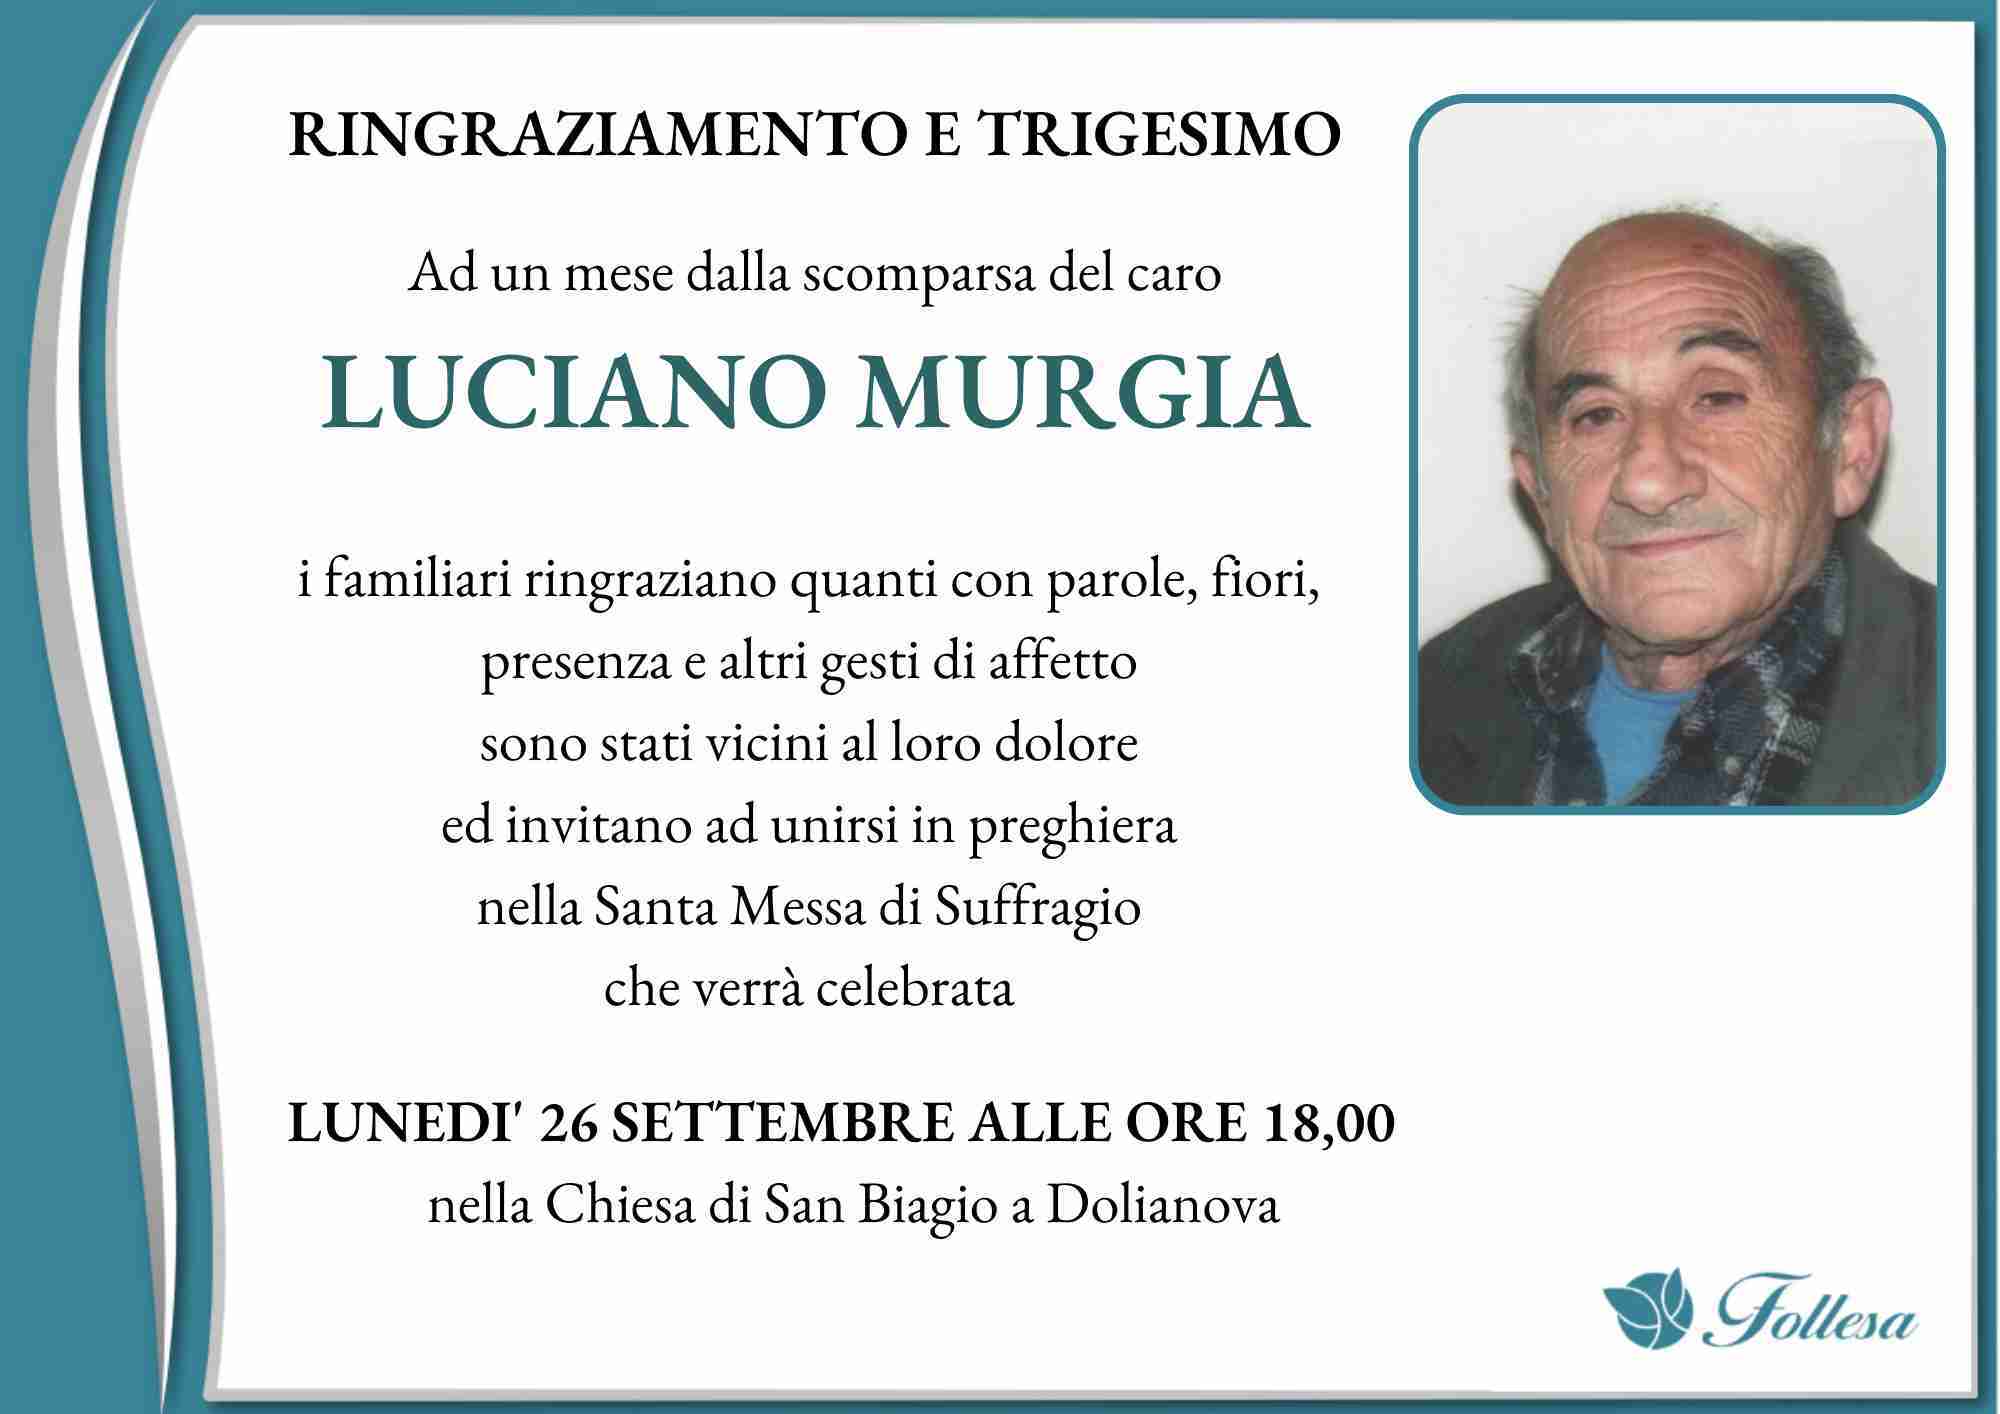 Luciano Murgia